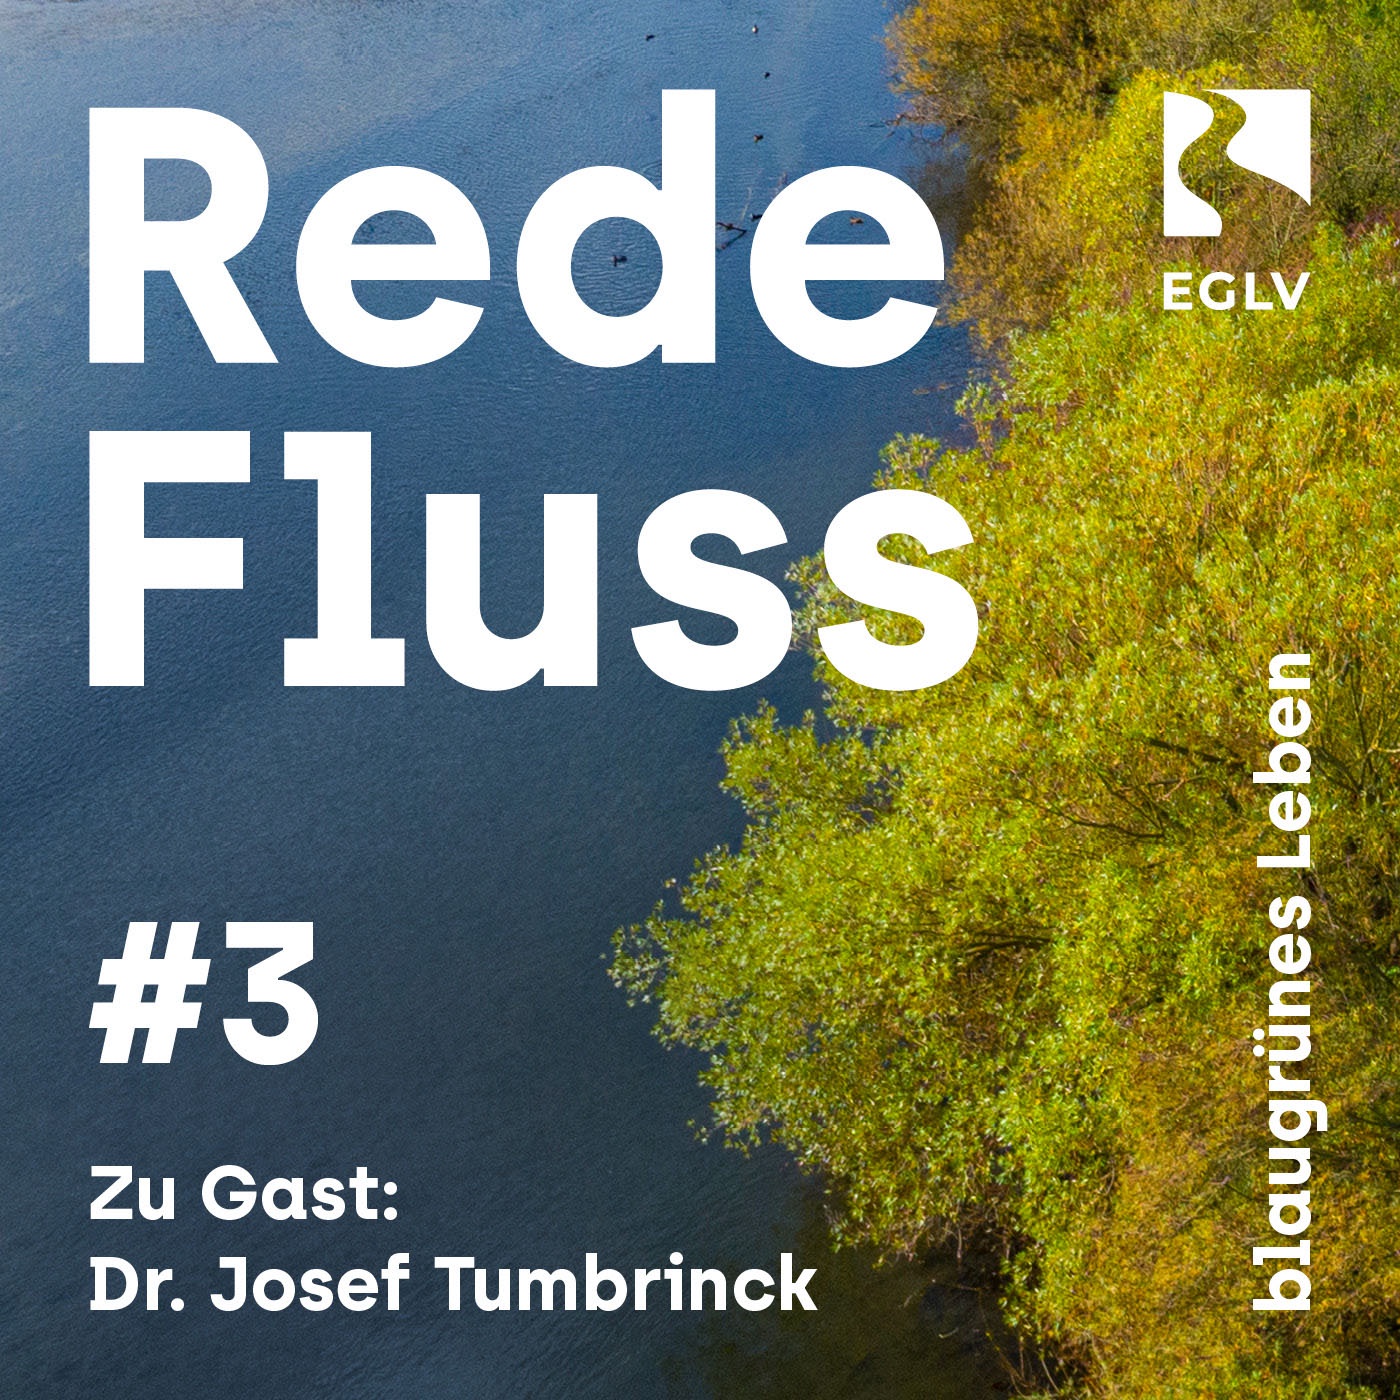 #03 Wie geht Naturschutz in dichtbesiedelten Regionen wie dem Ruhrgebiet?